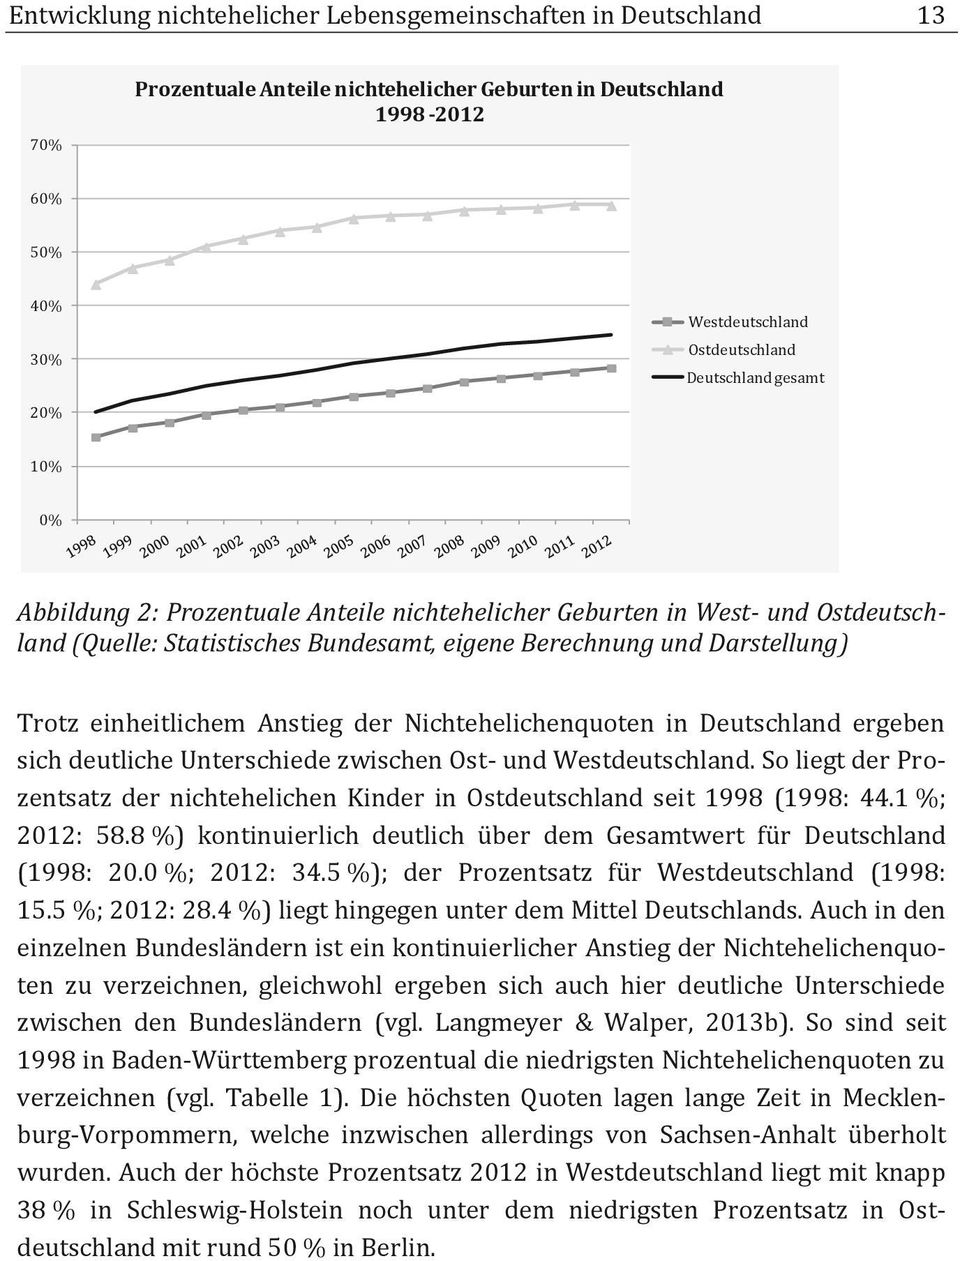 der Nichtehelichenquoten in Deutschland ergeben sich deutliche Unterschiede zwischen Ost- und Westdeutschland. So liegt der Prozentsatz der nichtehelichen Kinder in Ostdeutschland seit 1998 (1998: 44.